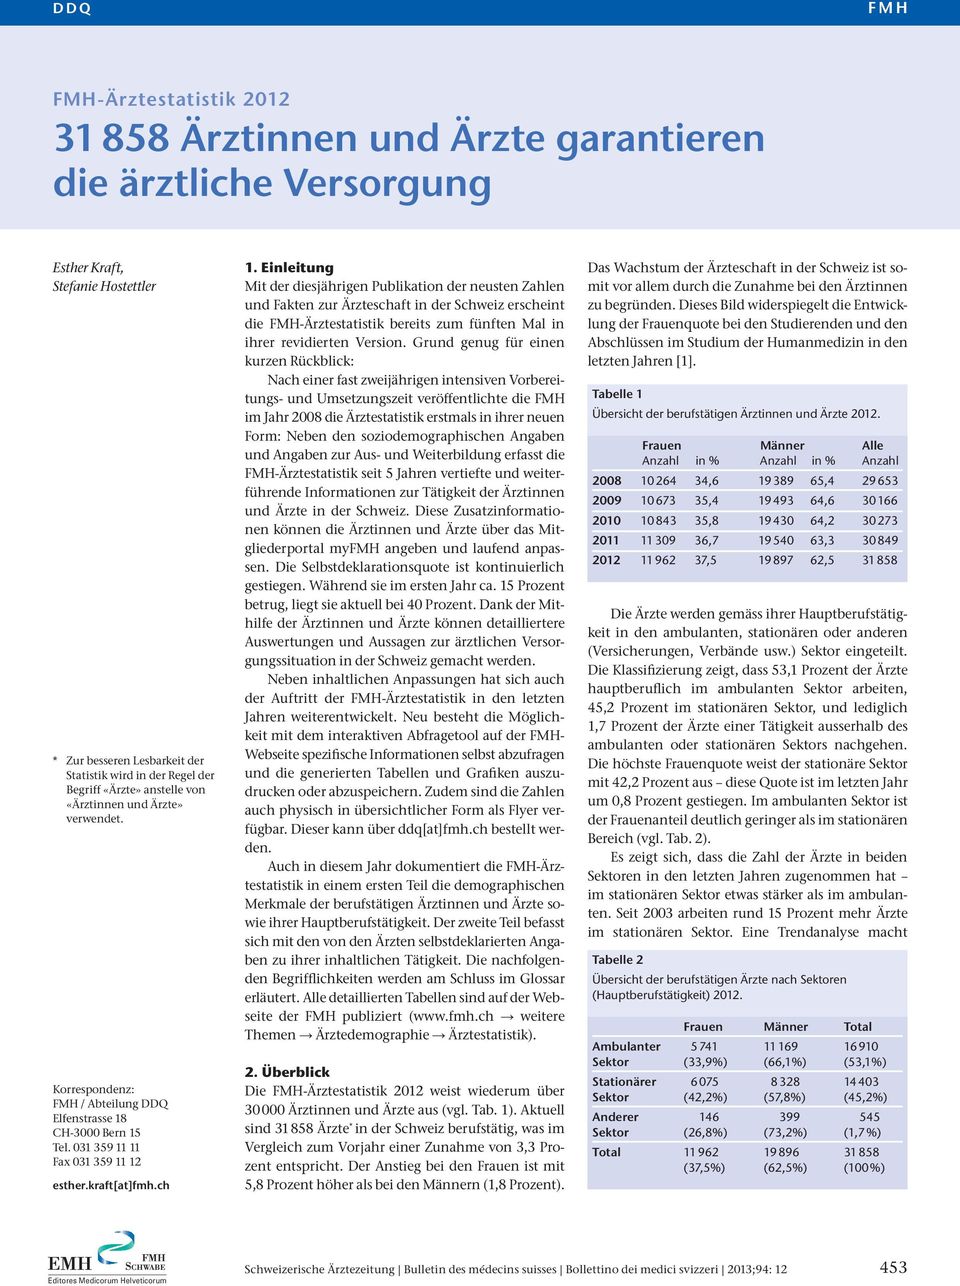 Einleitung Mit der diesjährigen Publikation der neusten Zahlen und Fakten zur Ärzteschaft in der Schweiz erscheint die FMH-Ärztestatistik bereits zum fünften Mal in ihrer revidierten Version.